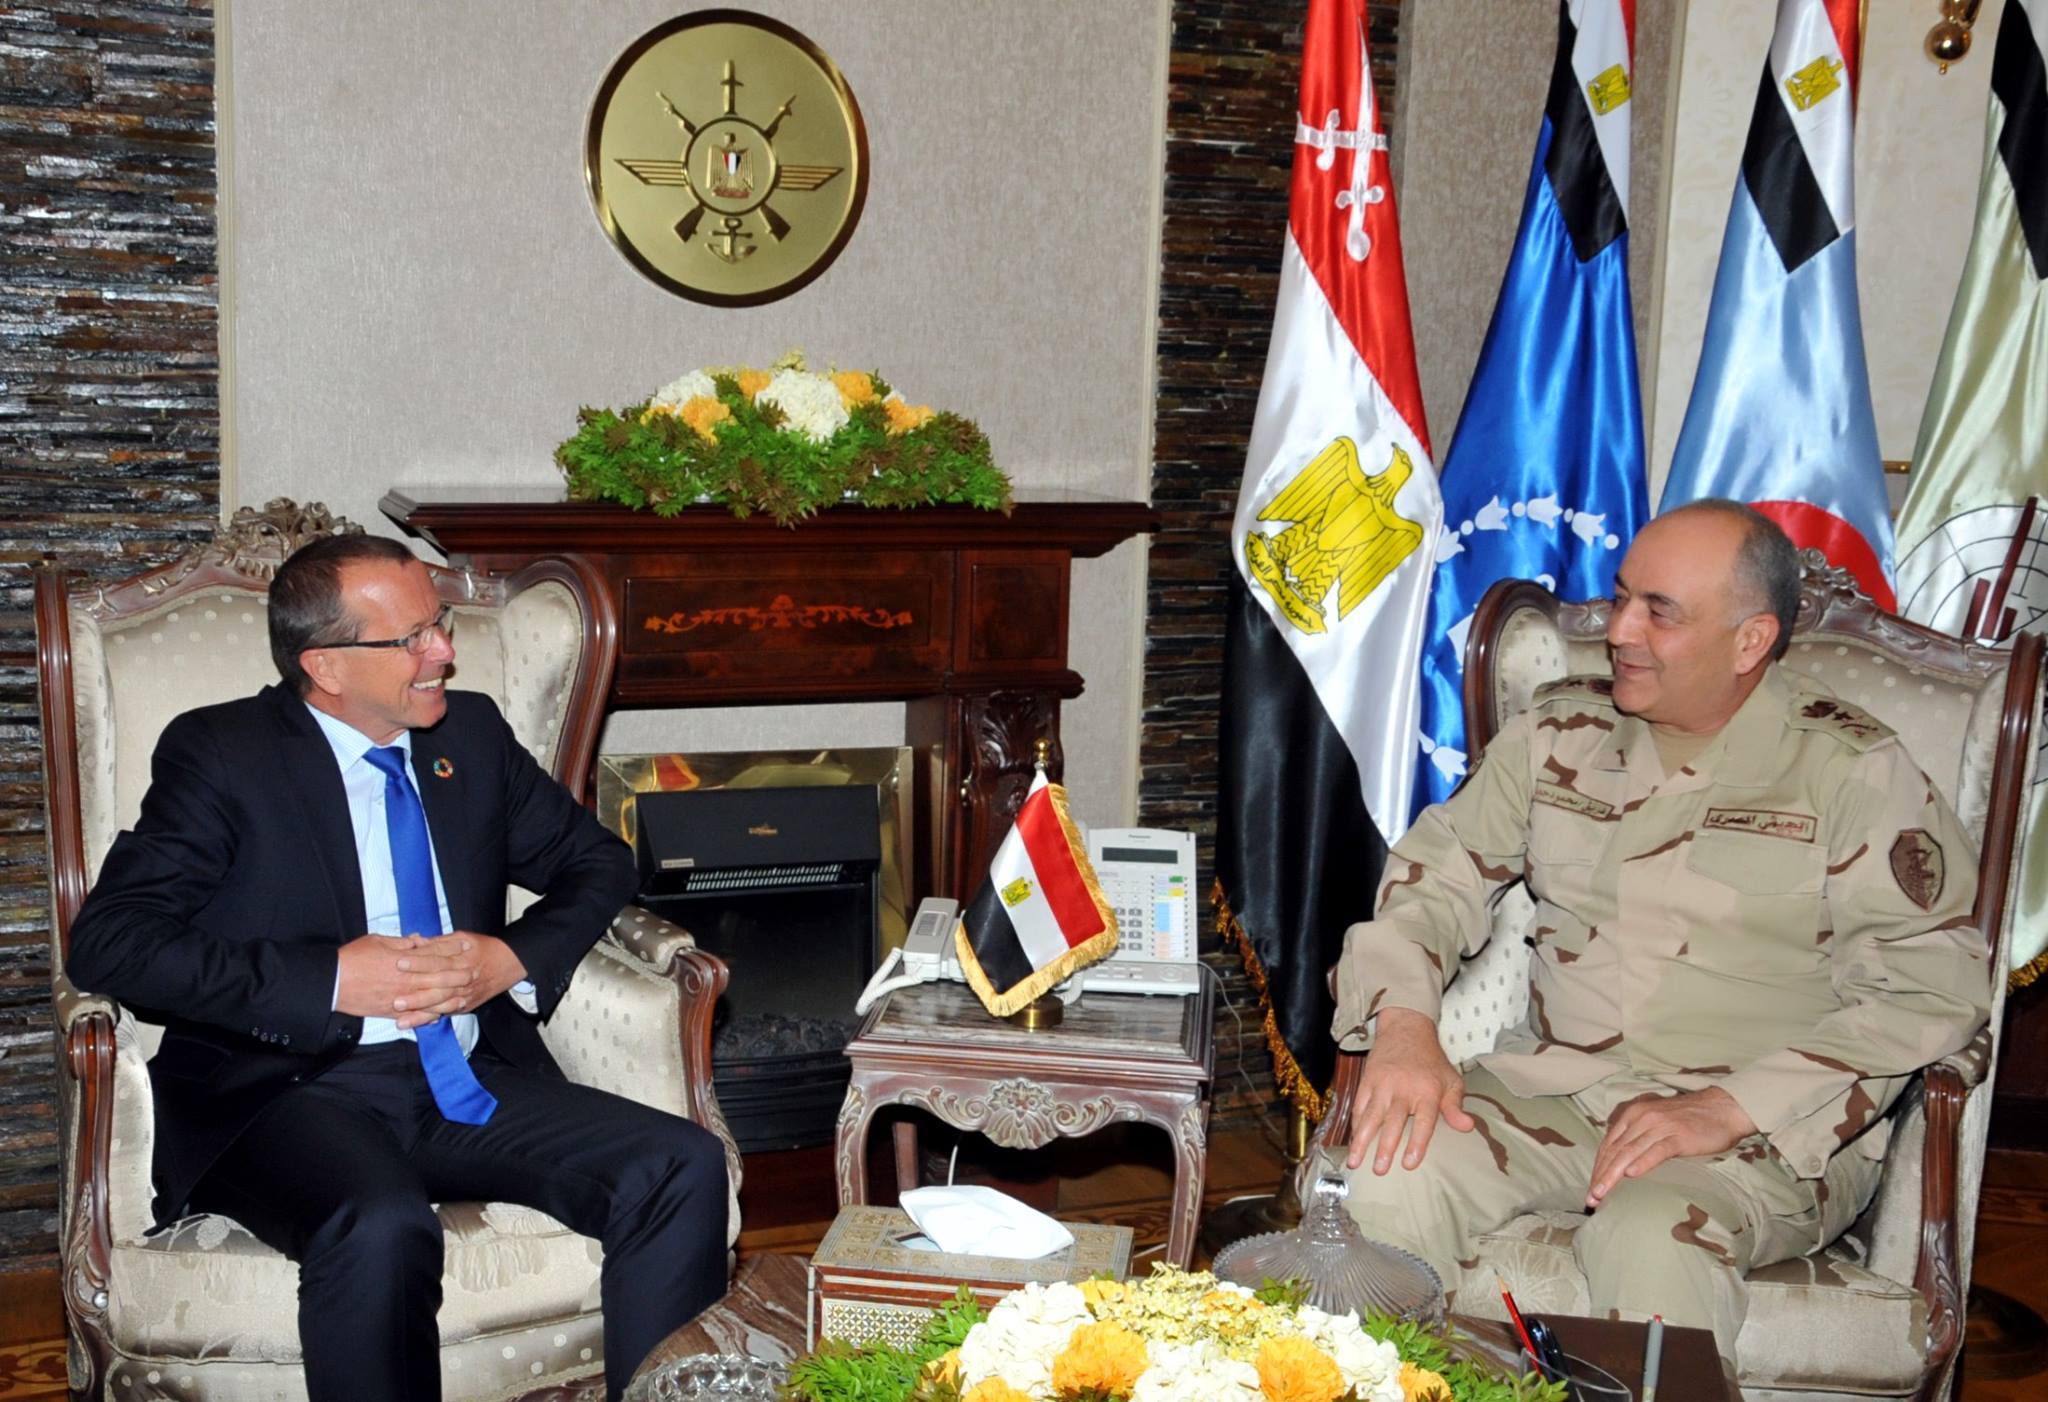 رئيس أركان حرب القوات المسلحة المصرية الفريق محمود حجازي مع الممثل الخاص للأمين العام للأمم المتحدة في ليبيا مارتن كوبلر